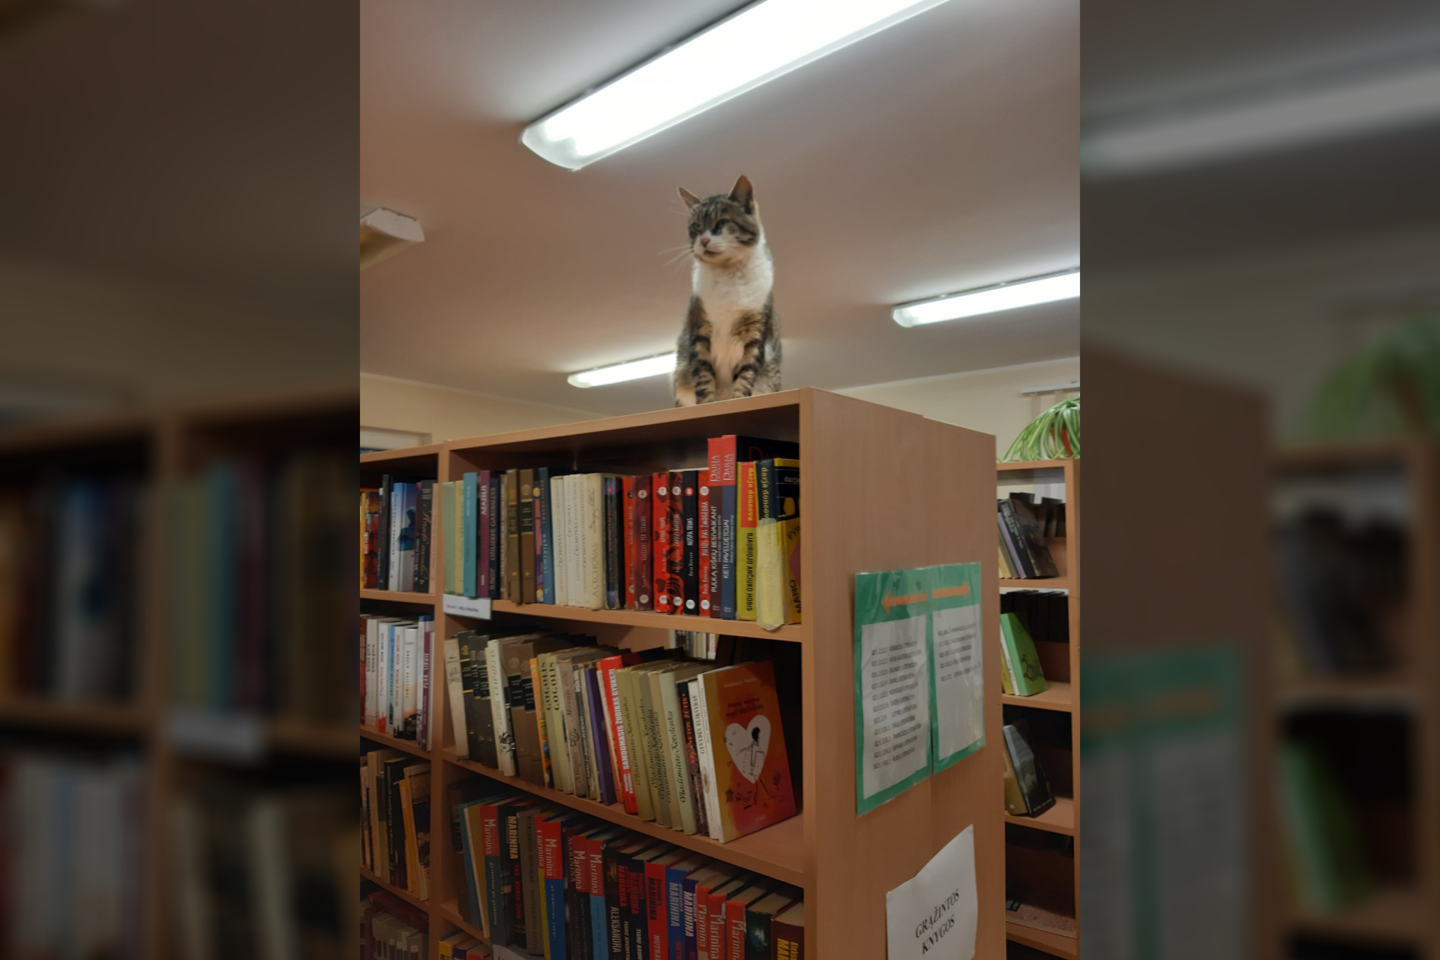  Kazokiškių biblioteką jau beveik treti metai pastoviai lanko katinas Rainis.<br> Elektrėnų savivaldybės viešoji biblioteka nuotr.